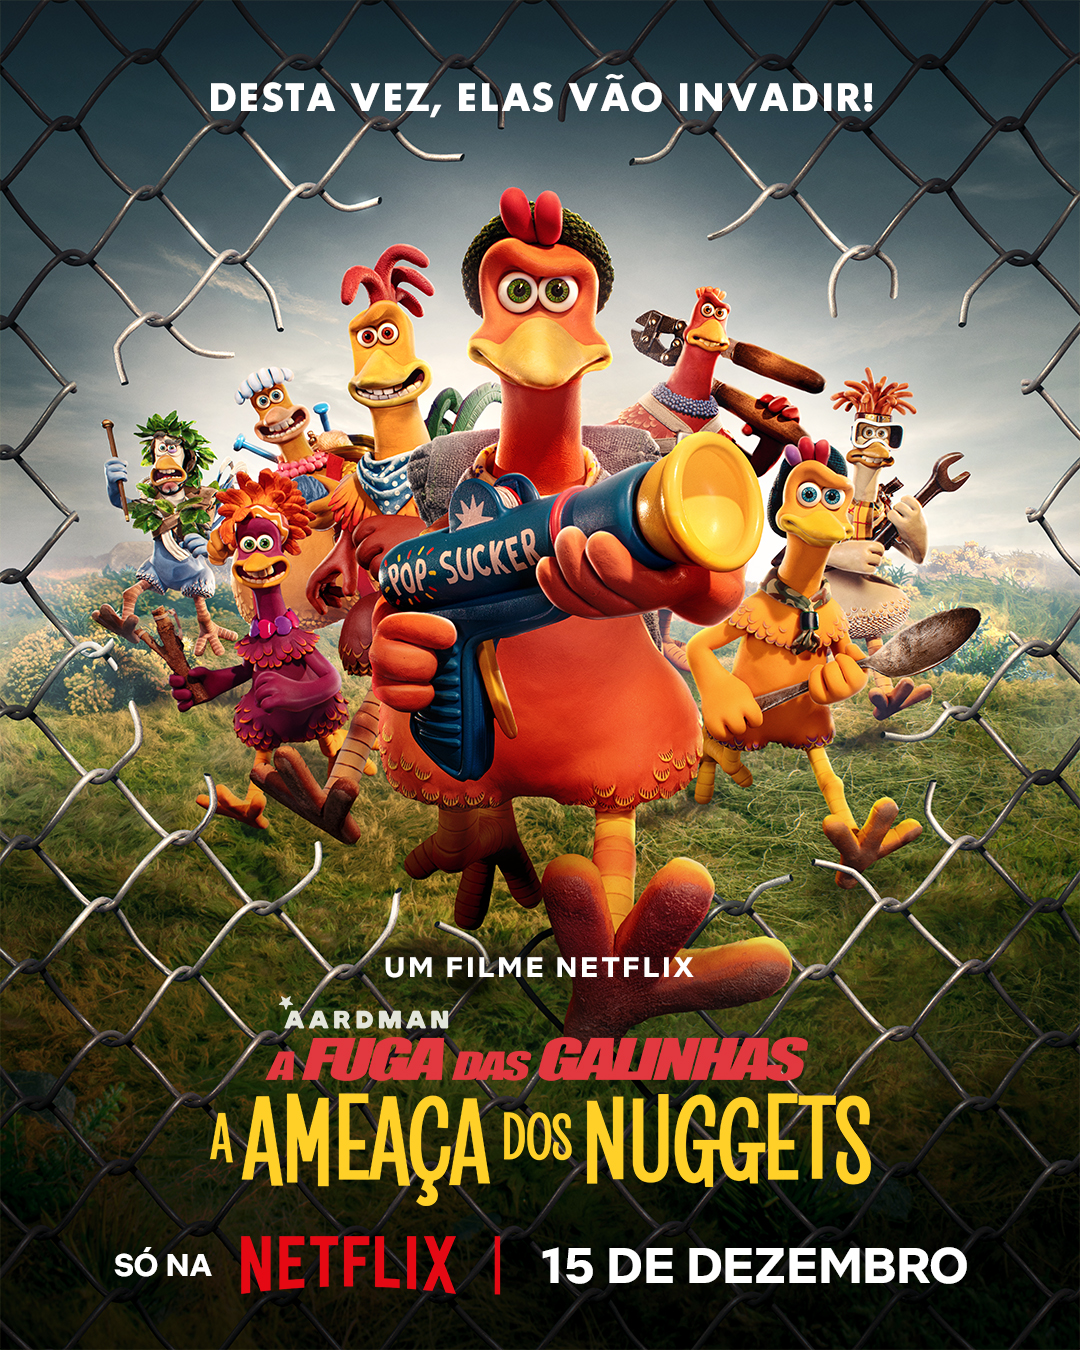 A Fuga das Galinhas: A Ameaça dos Nuggets  Sequência do clássico de  animação ganha trailer e pôster pela Netflix - Cinema com Rapadura